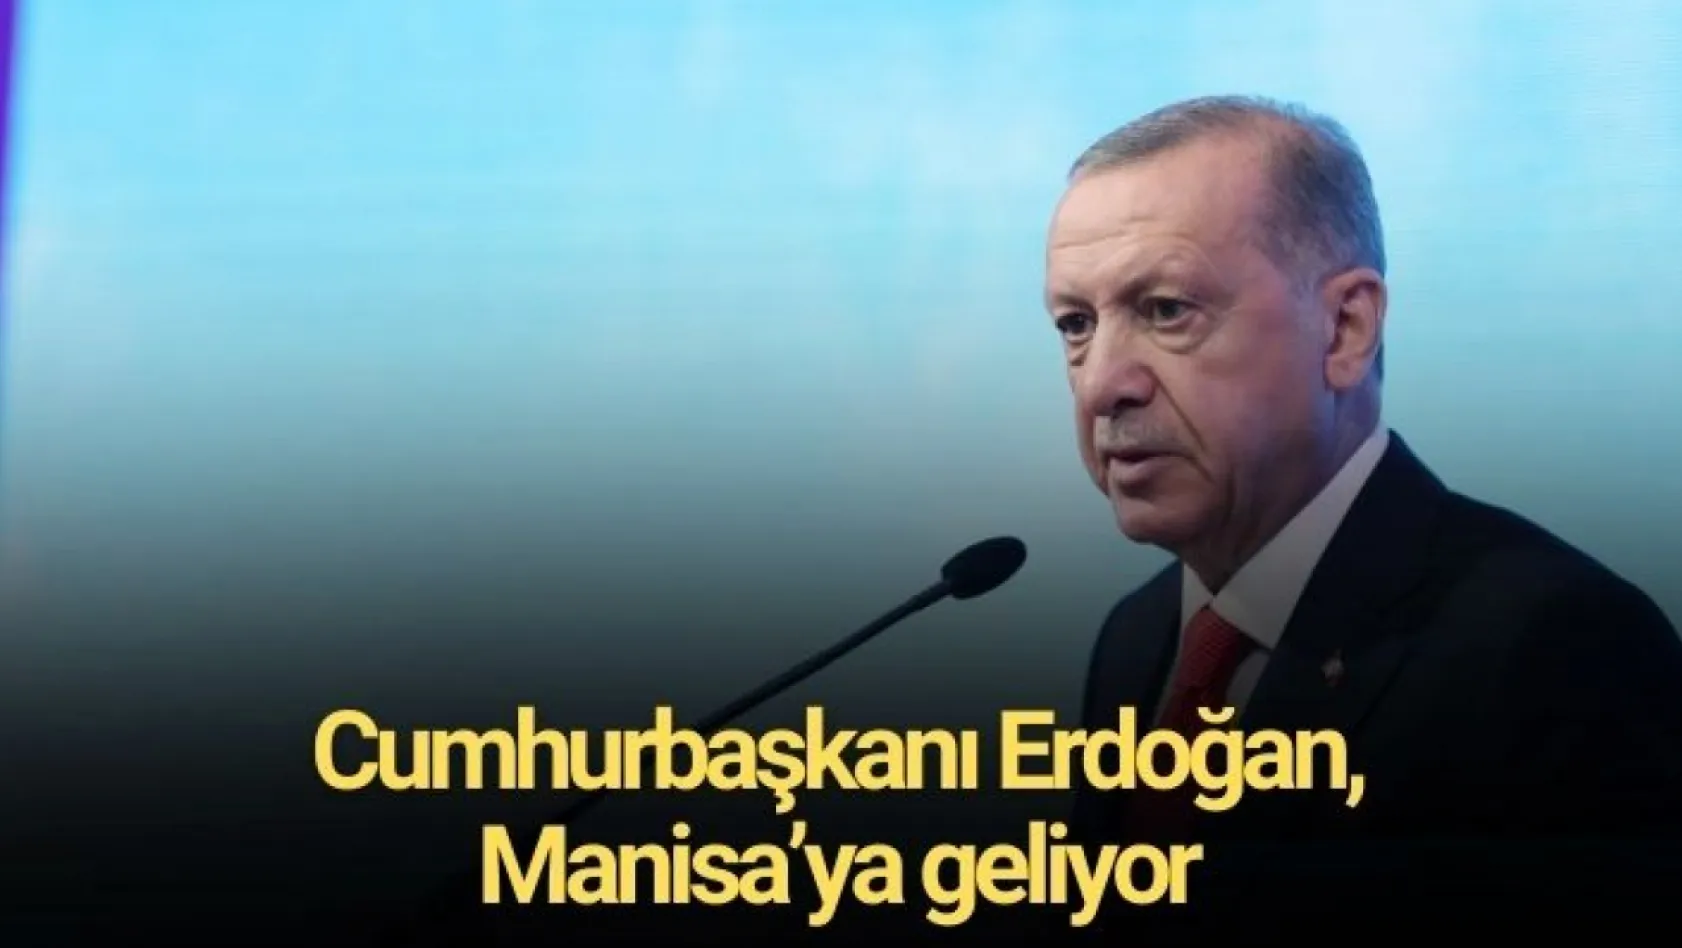 Cumhurbaşkanı Erdoğan, Manisa'ya geliyor... Tarih belli oldu!